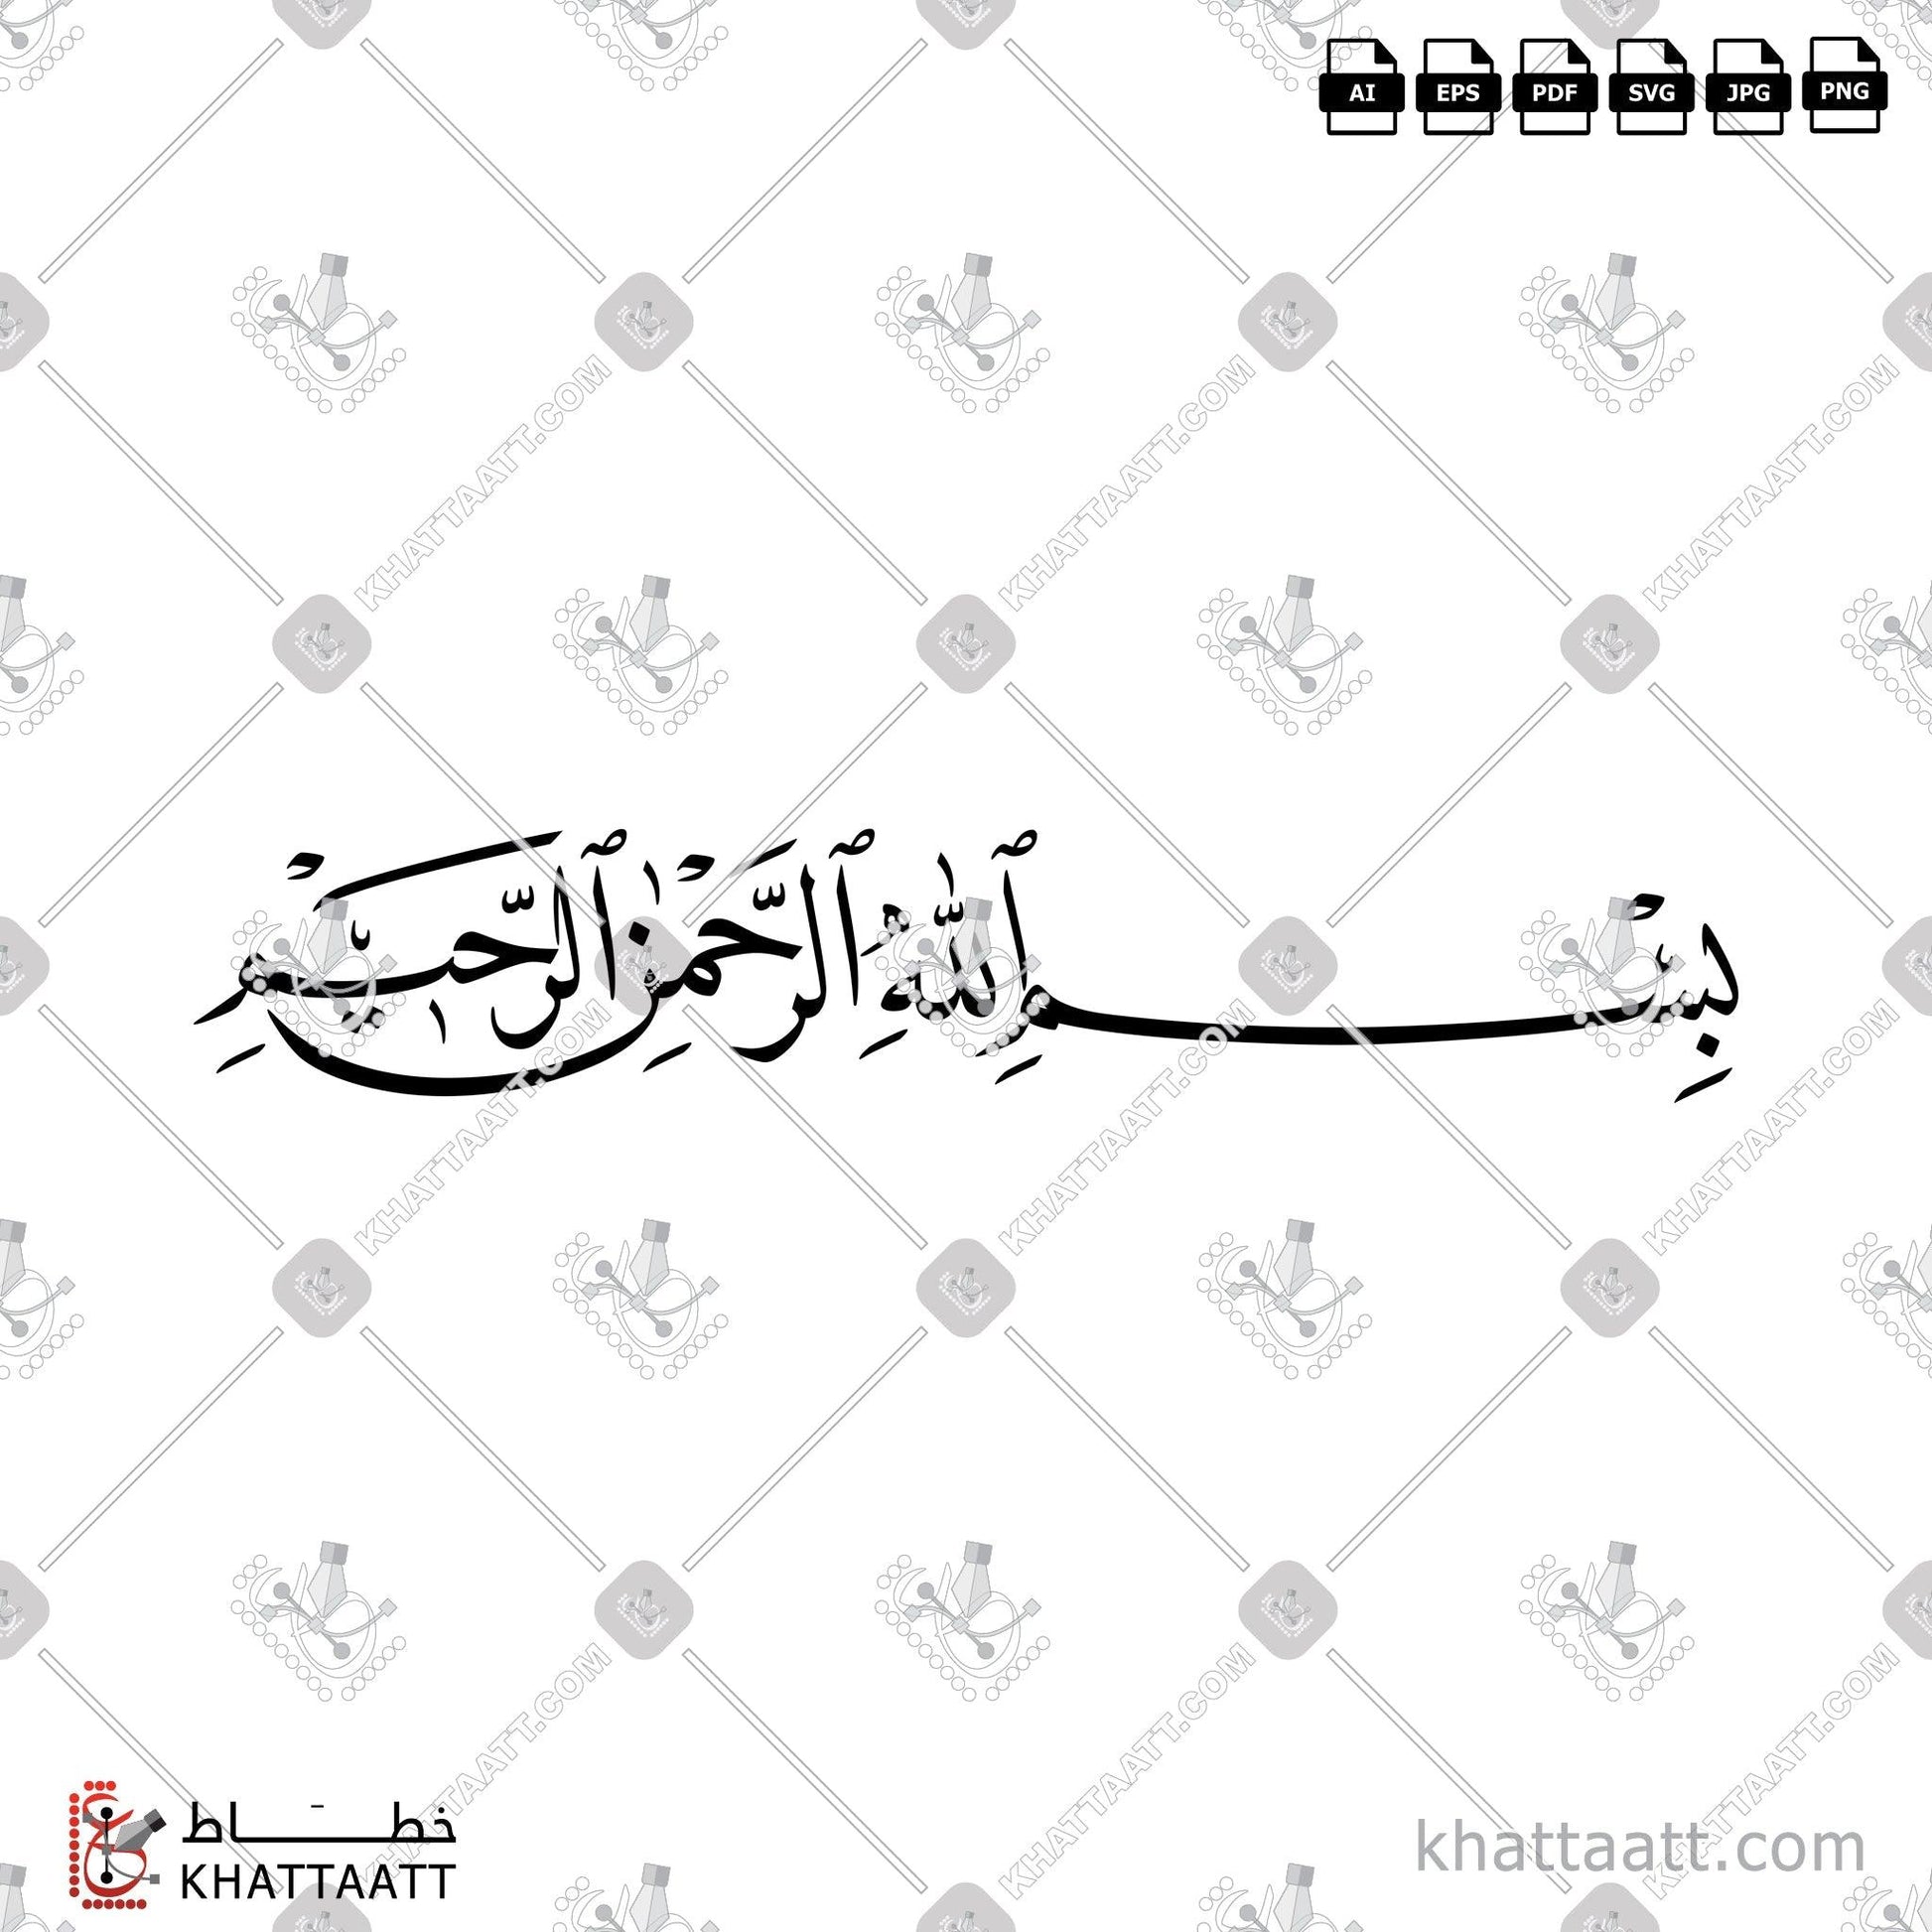 Arabic Calligraphy Vector, Bismillah, Naskh Script, البسملة, الخط العربي, الله, بسم الله, بسم الله الرحمن الرحيم, خط النسخ KHATTAATT